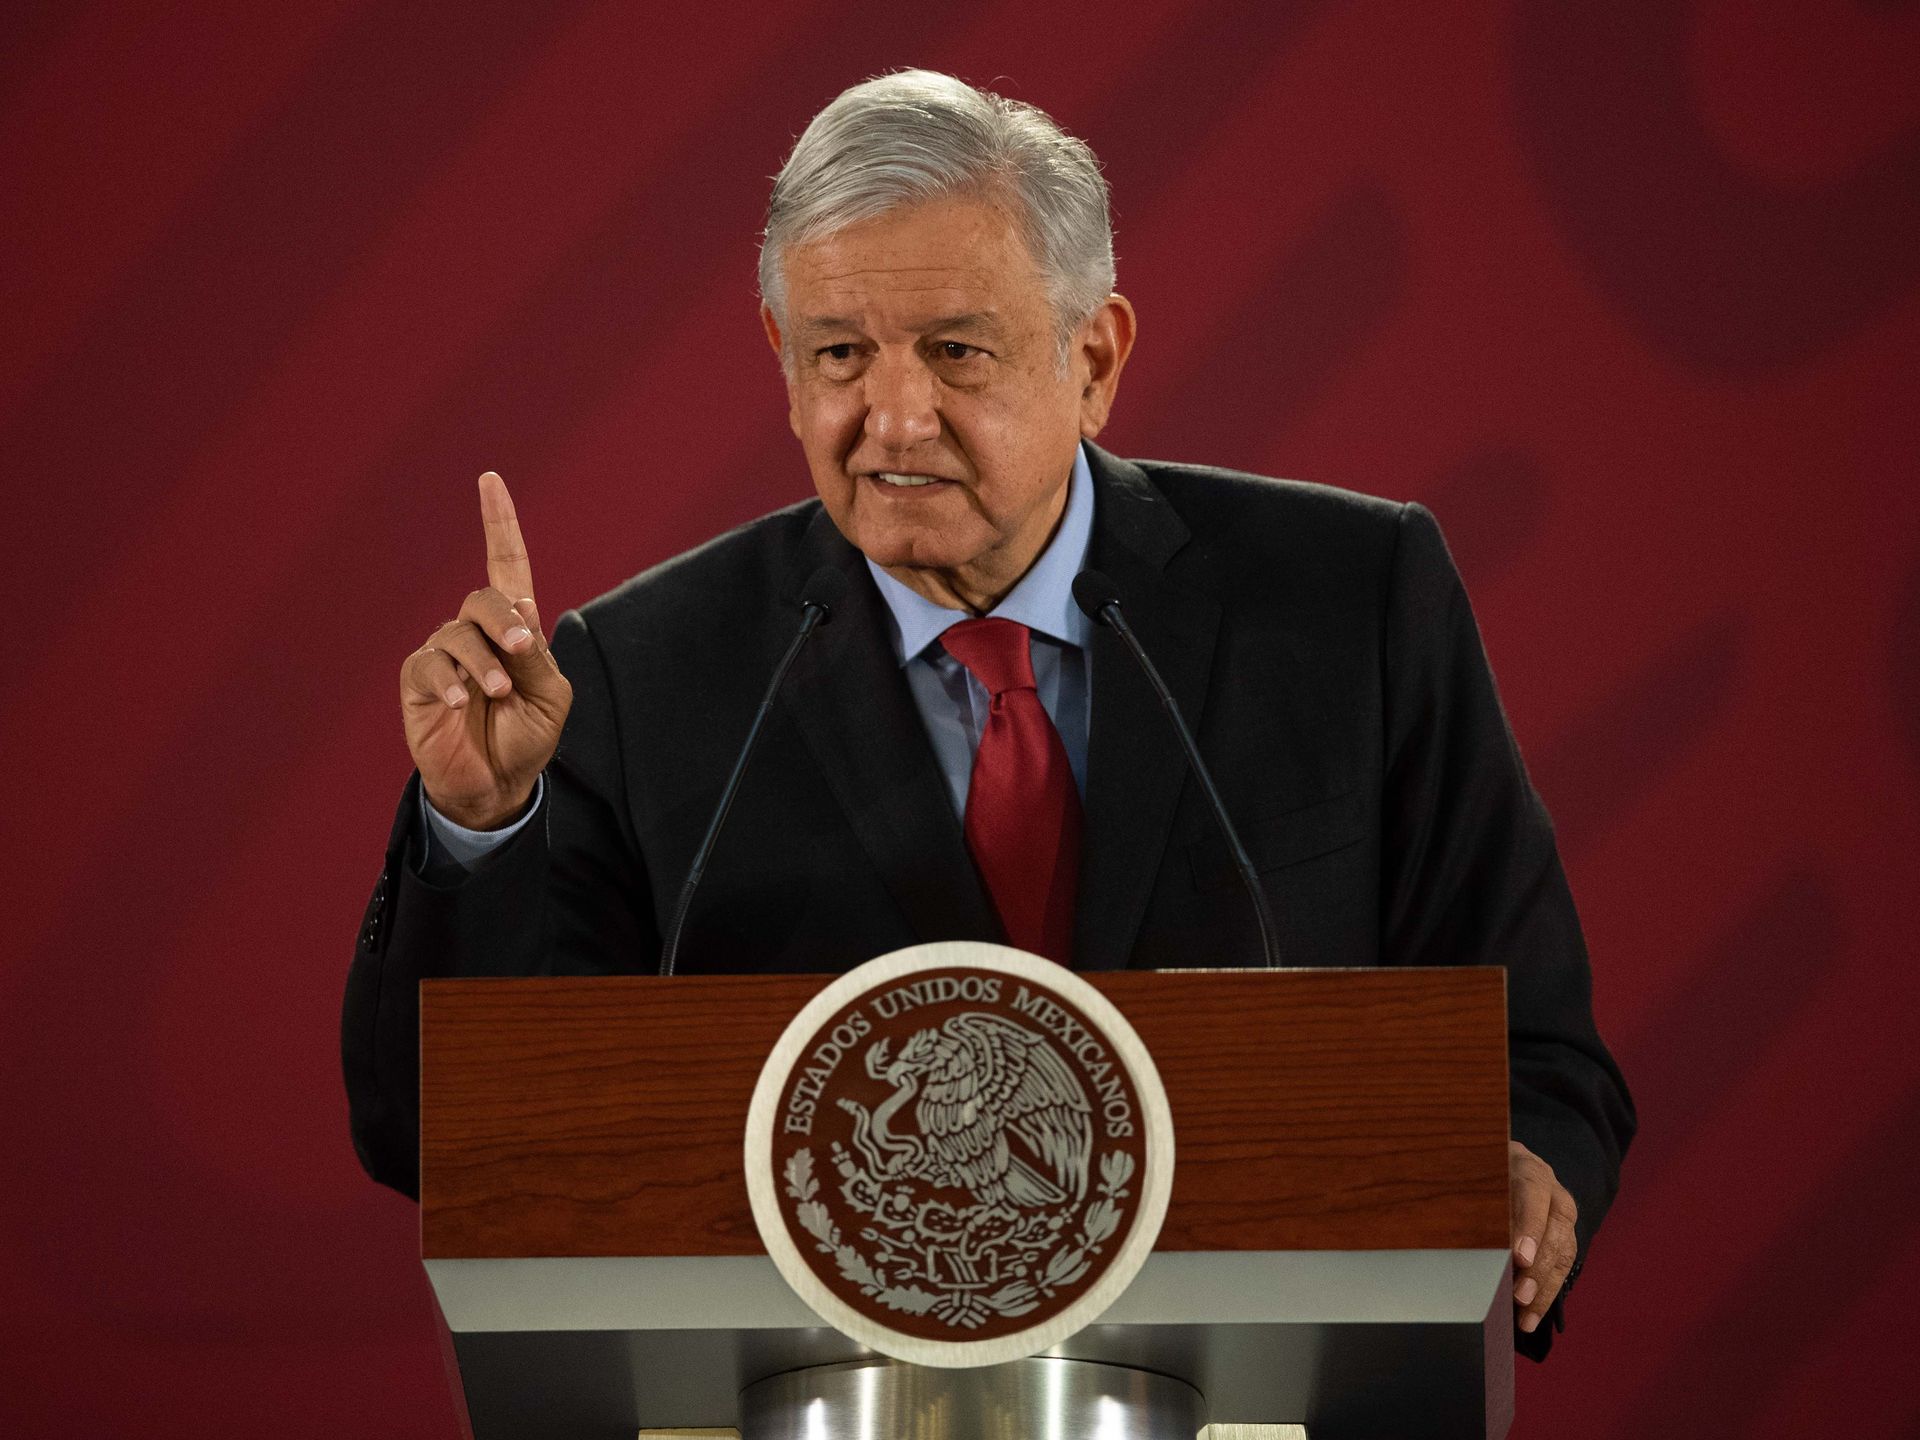 Mexican President Andrés Manuel López Obrador responds to Trump's tariffs